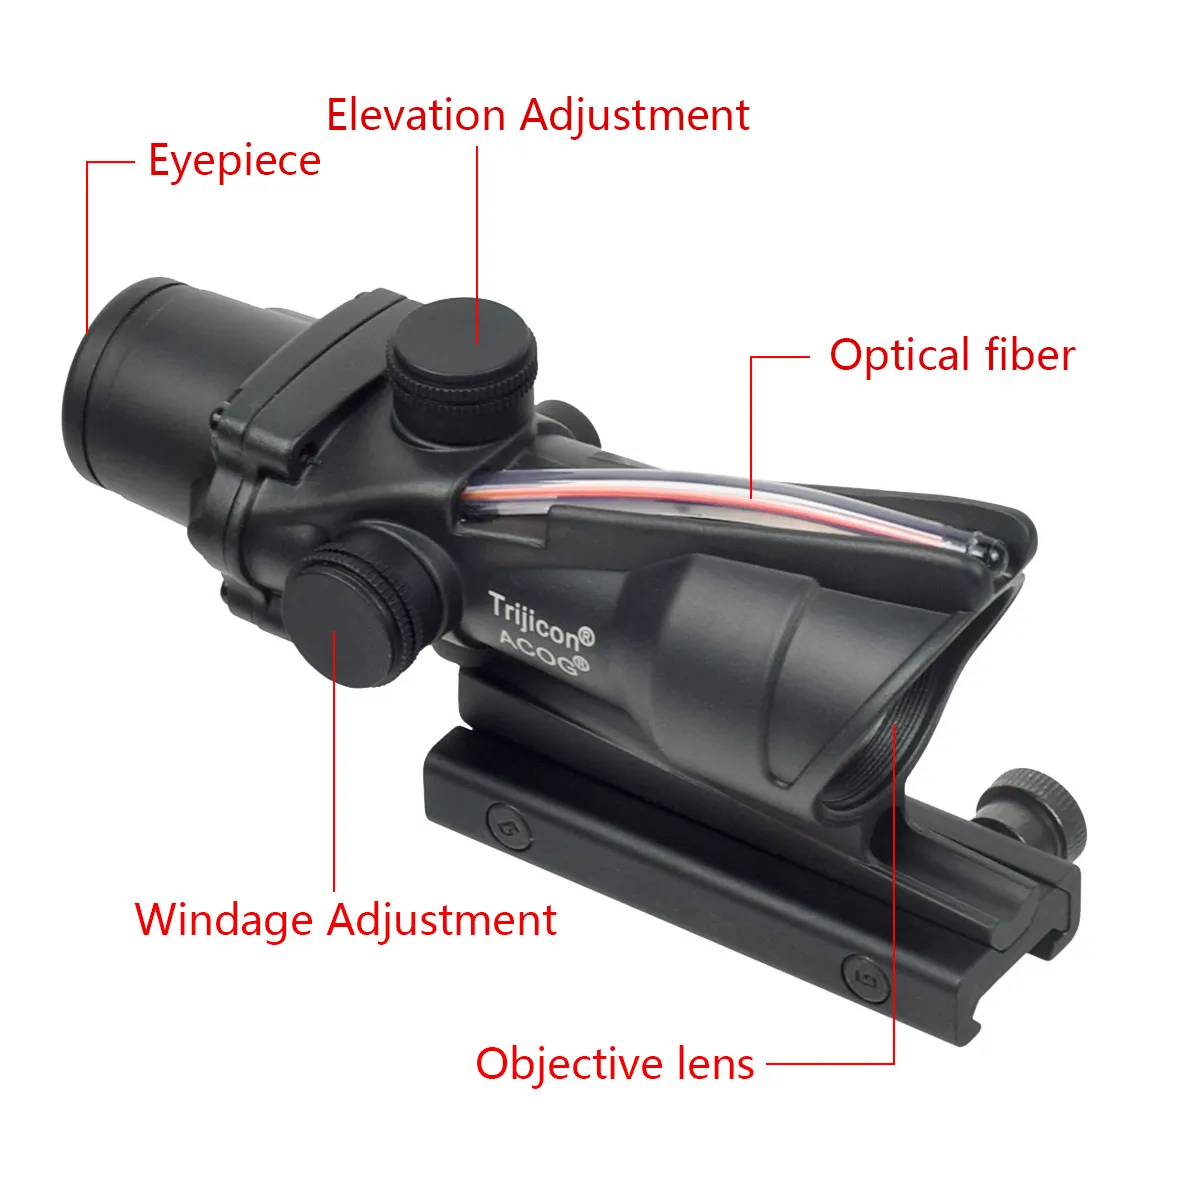 ACOG 4x32 fibra óptica real DOT vermelho iluminado Chevron Glass gravado no reticular escopo óptico tático